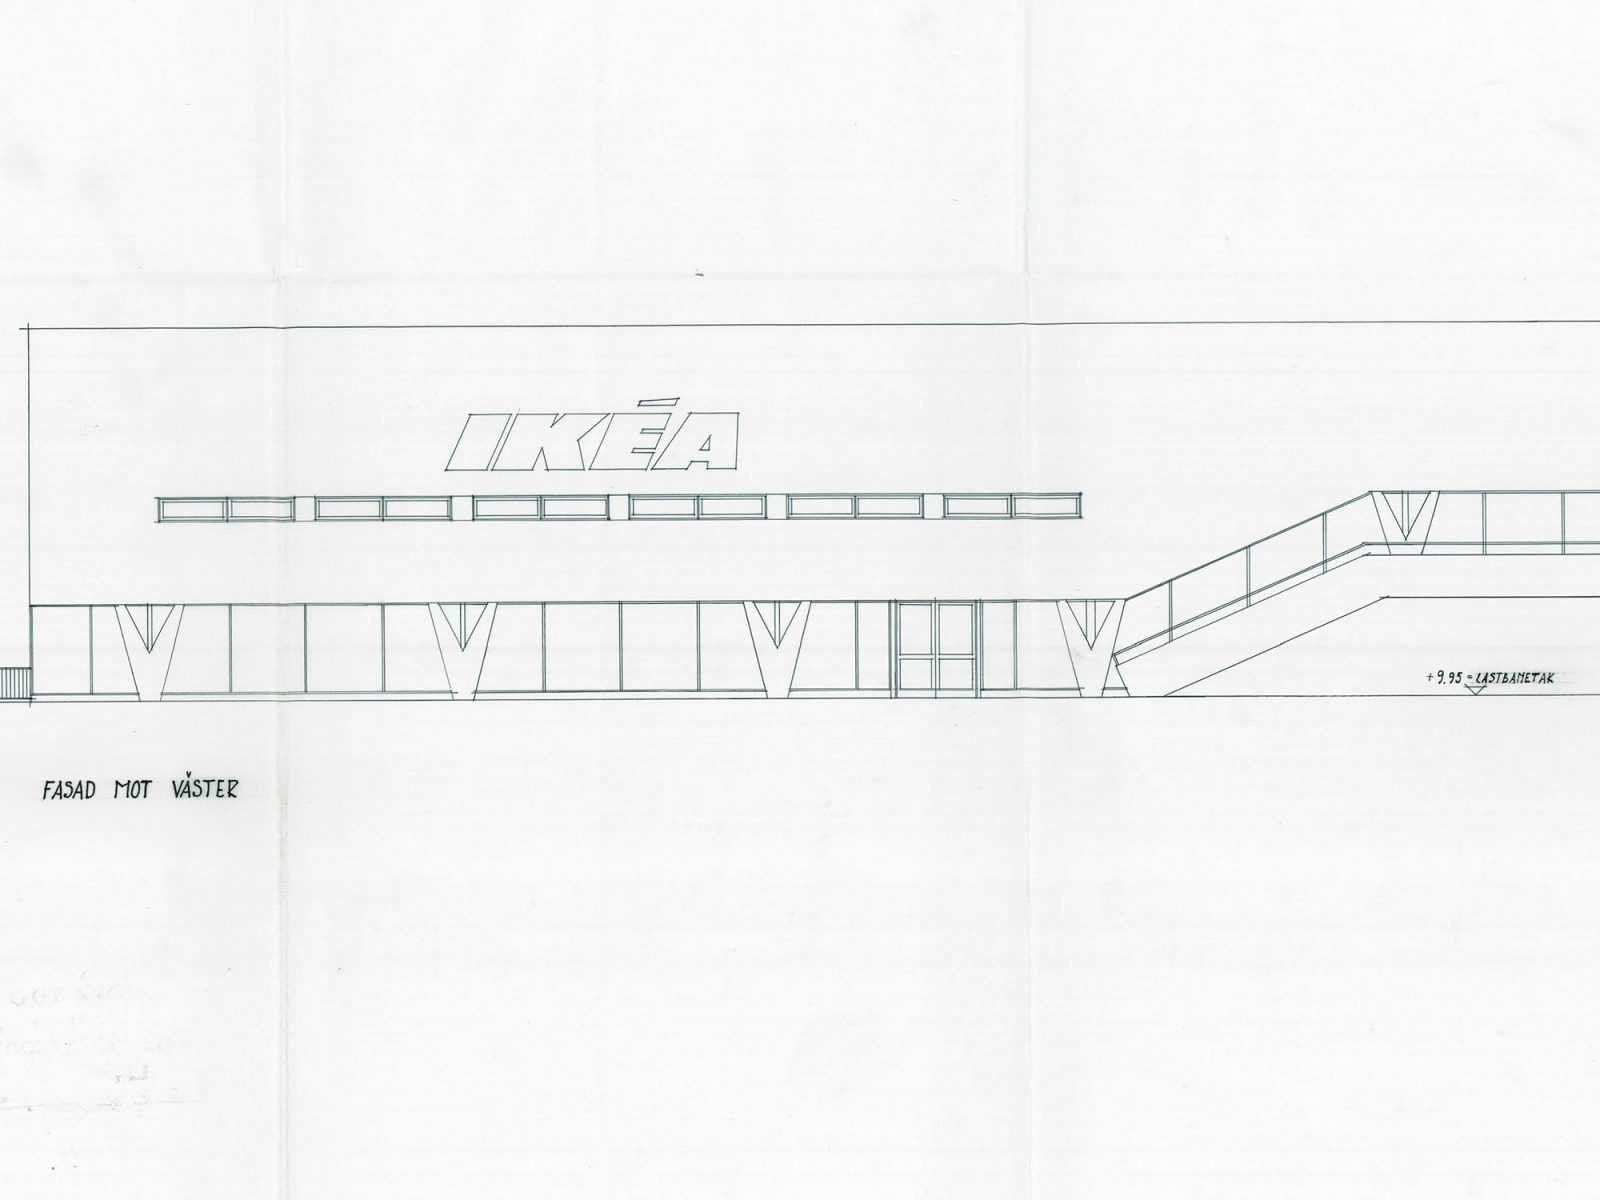 Architekturzeichung eines flachen Gebäudes mit Galerie und großen Schaufenstern, V-förmigen Säulen und IKEA Schild.